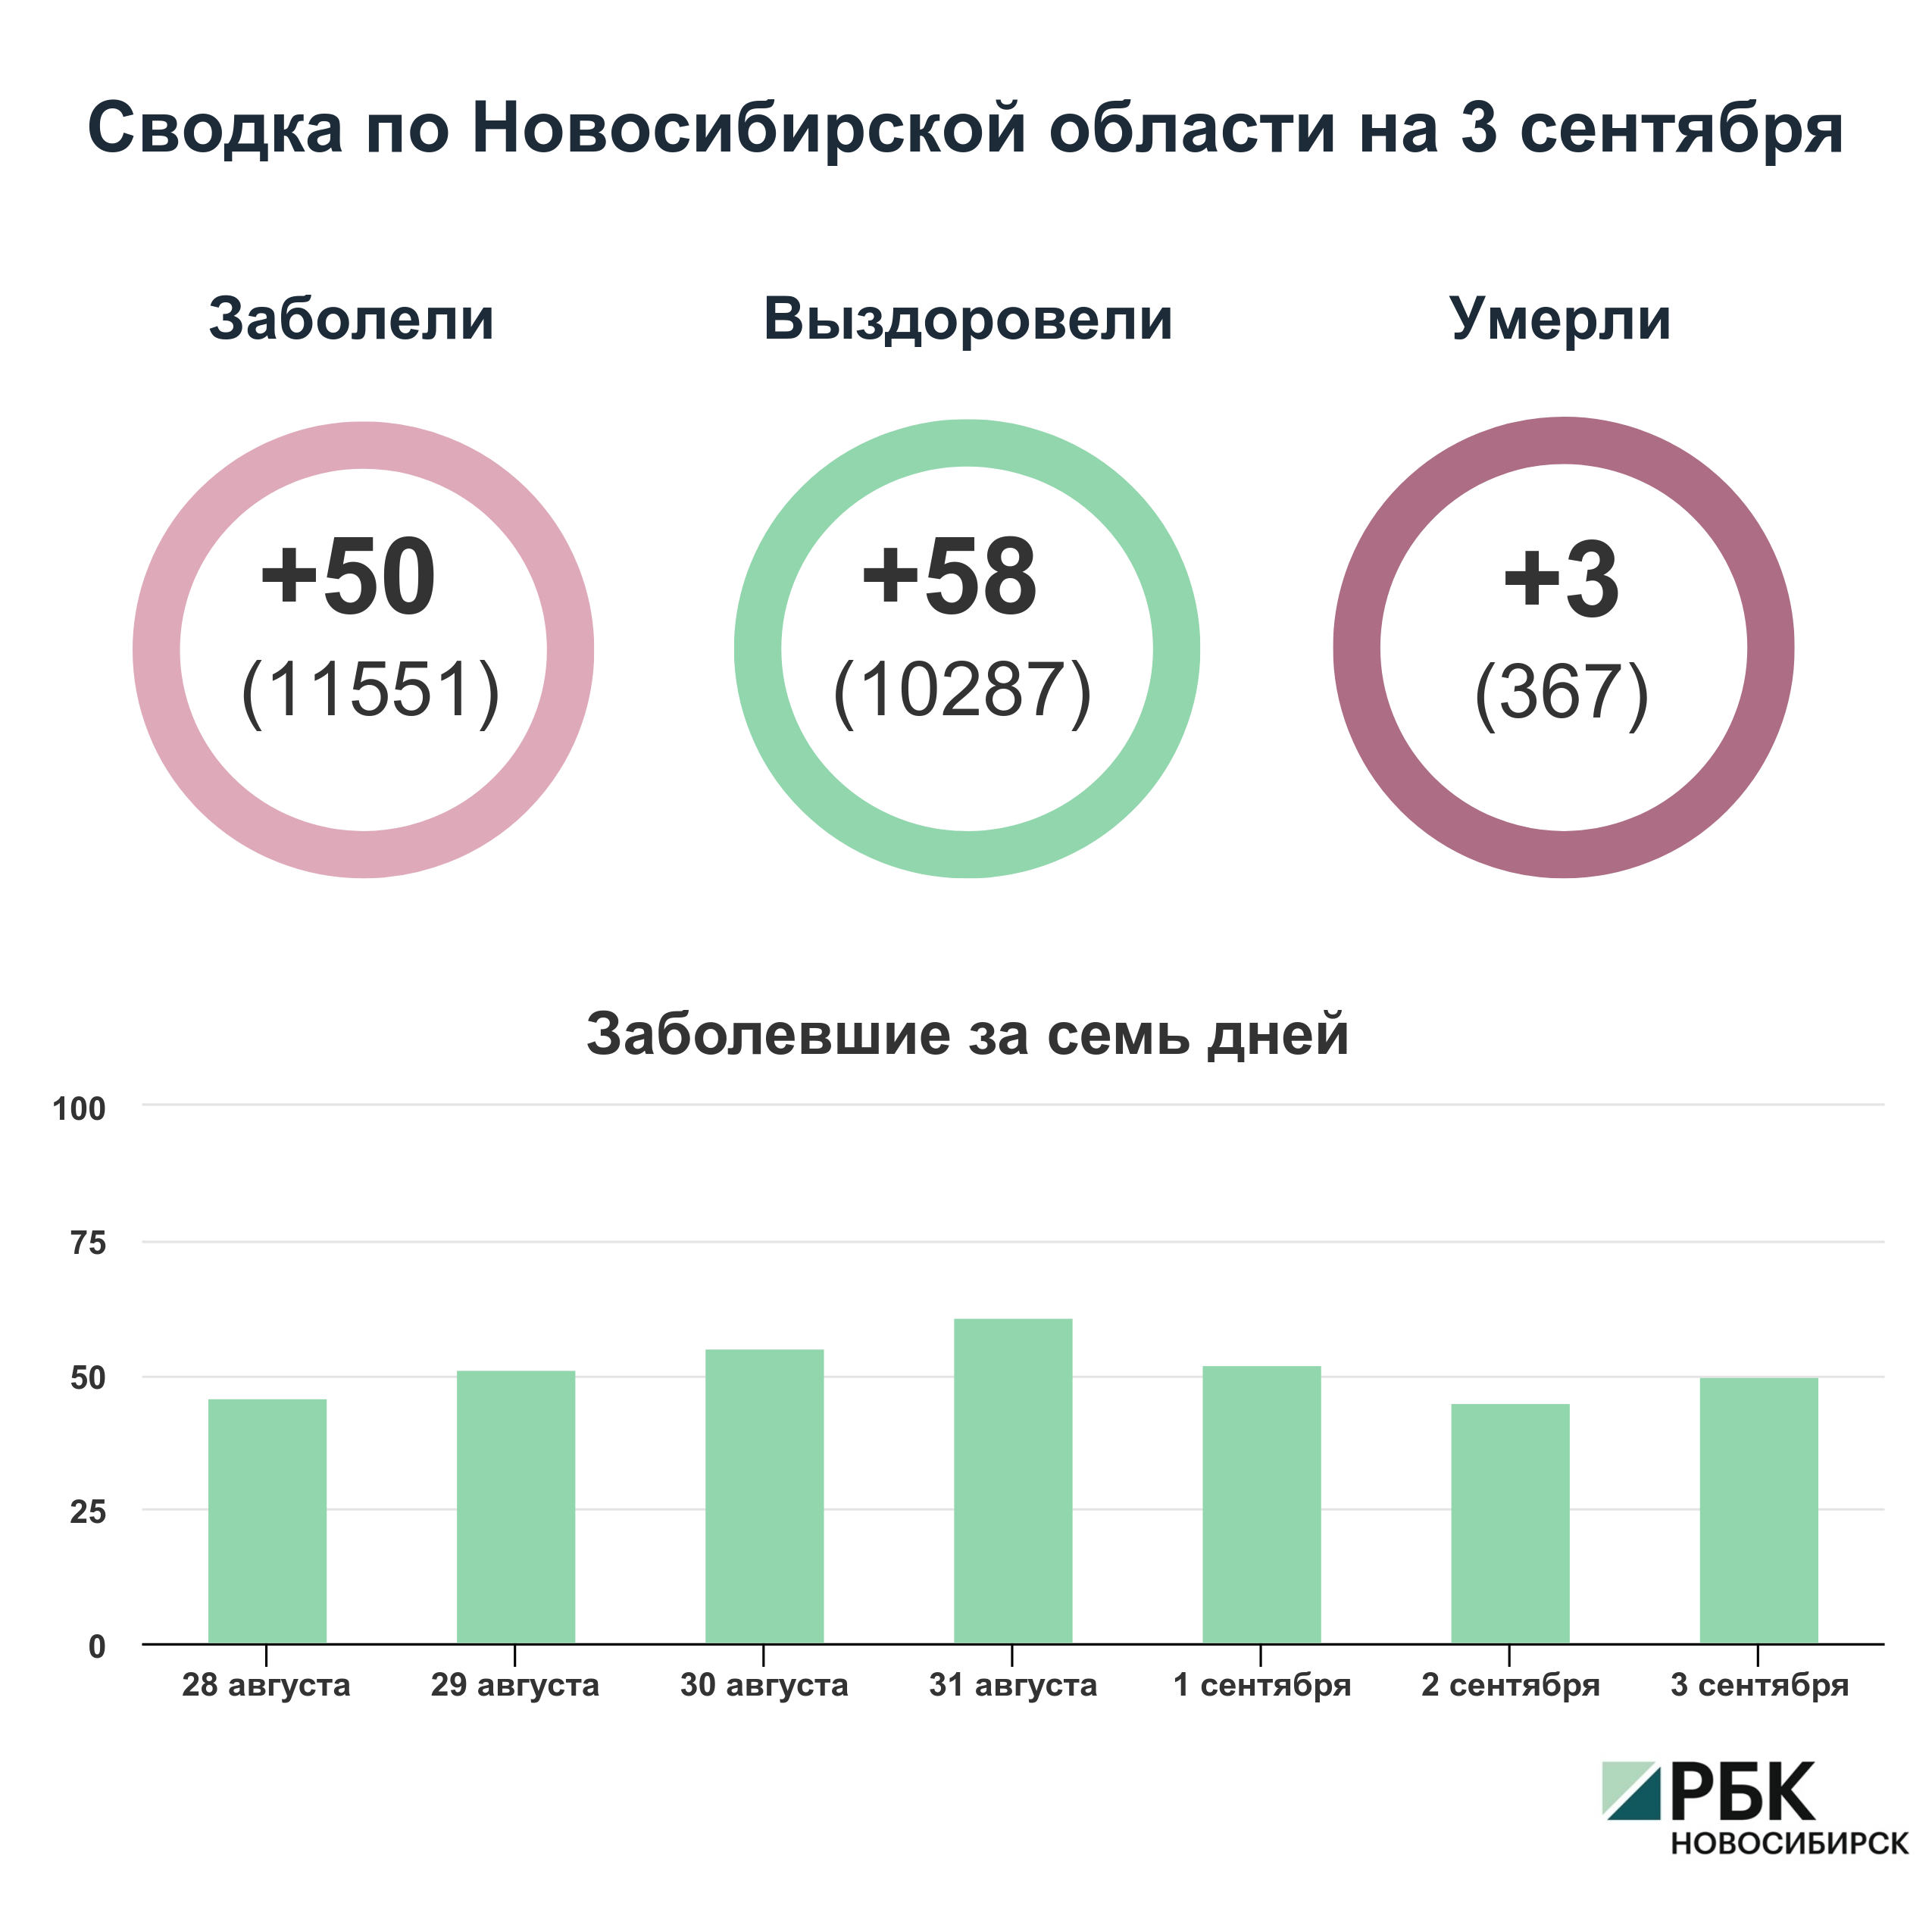 Коронавирус в Новосибирске: сводка на 3 сентября